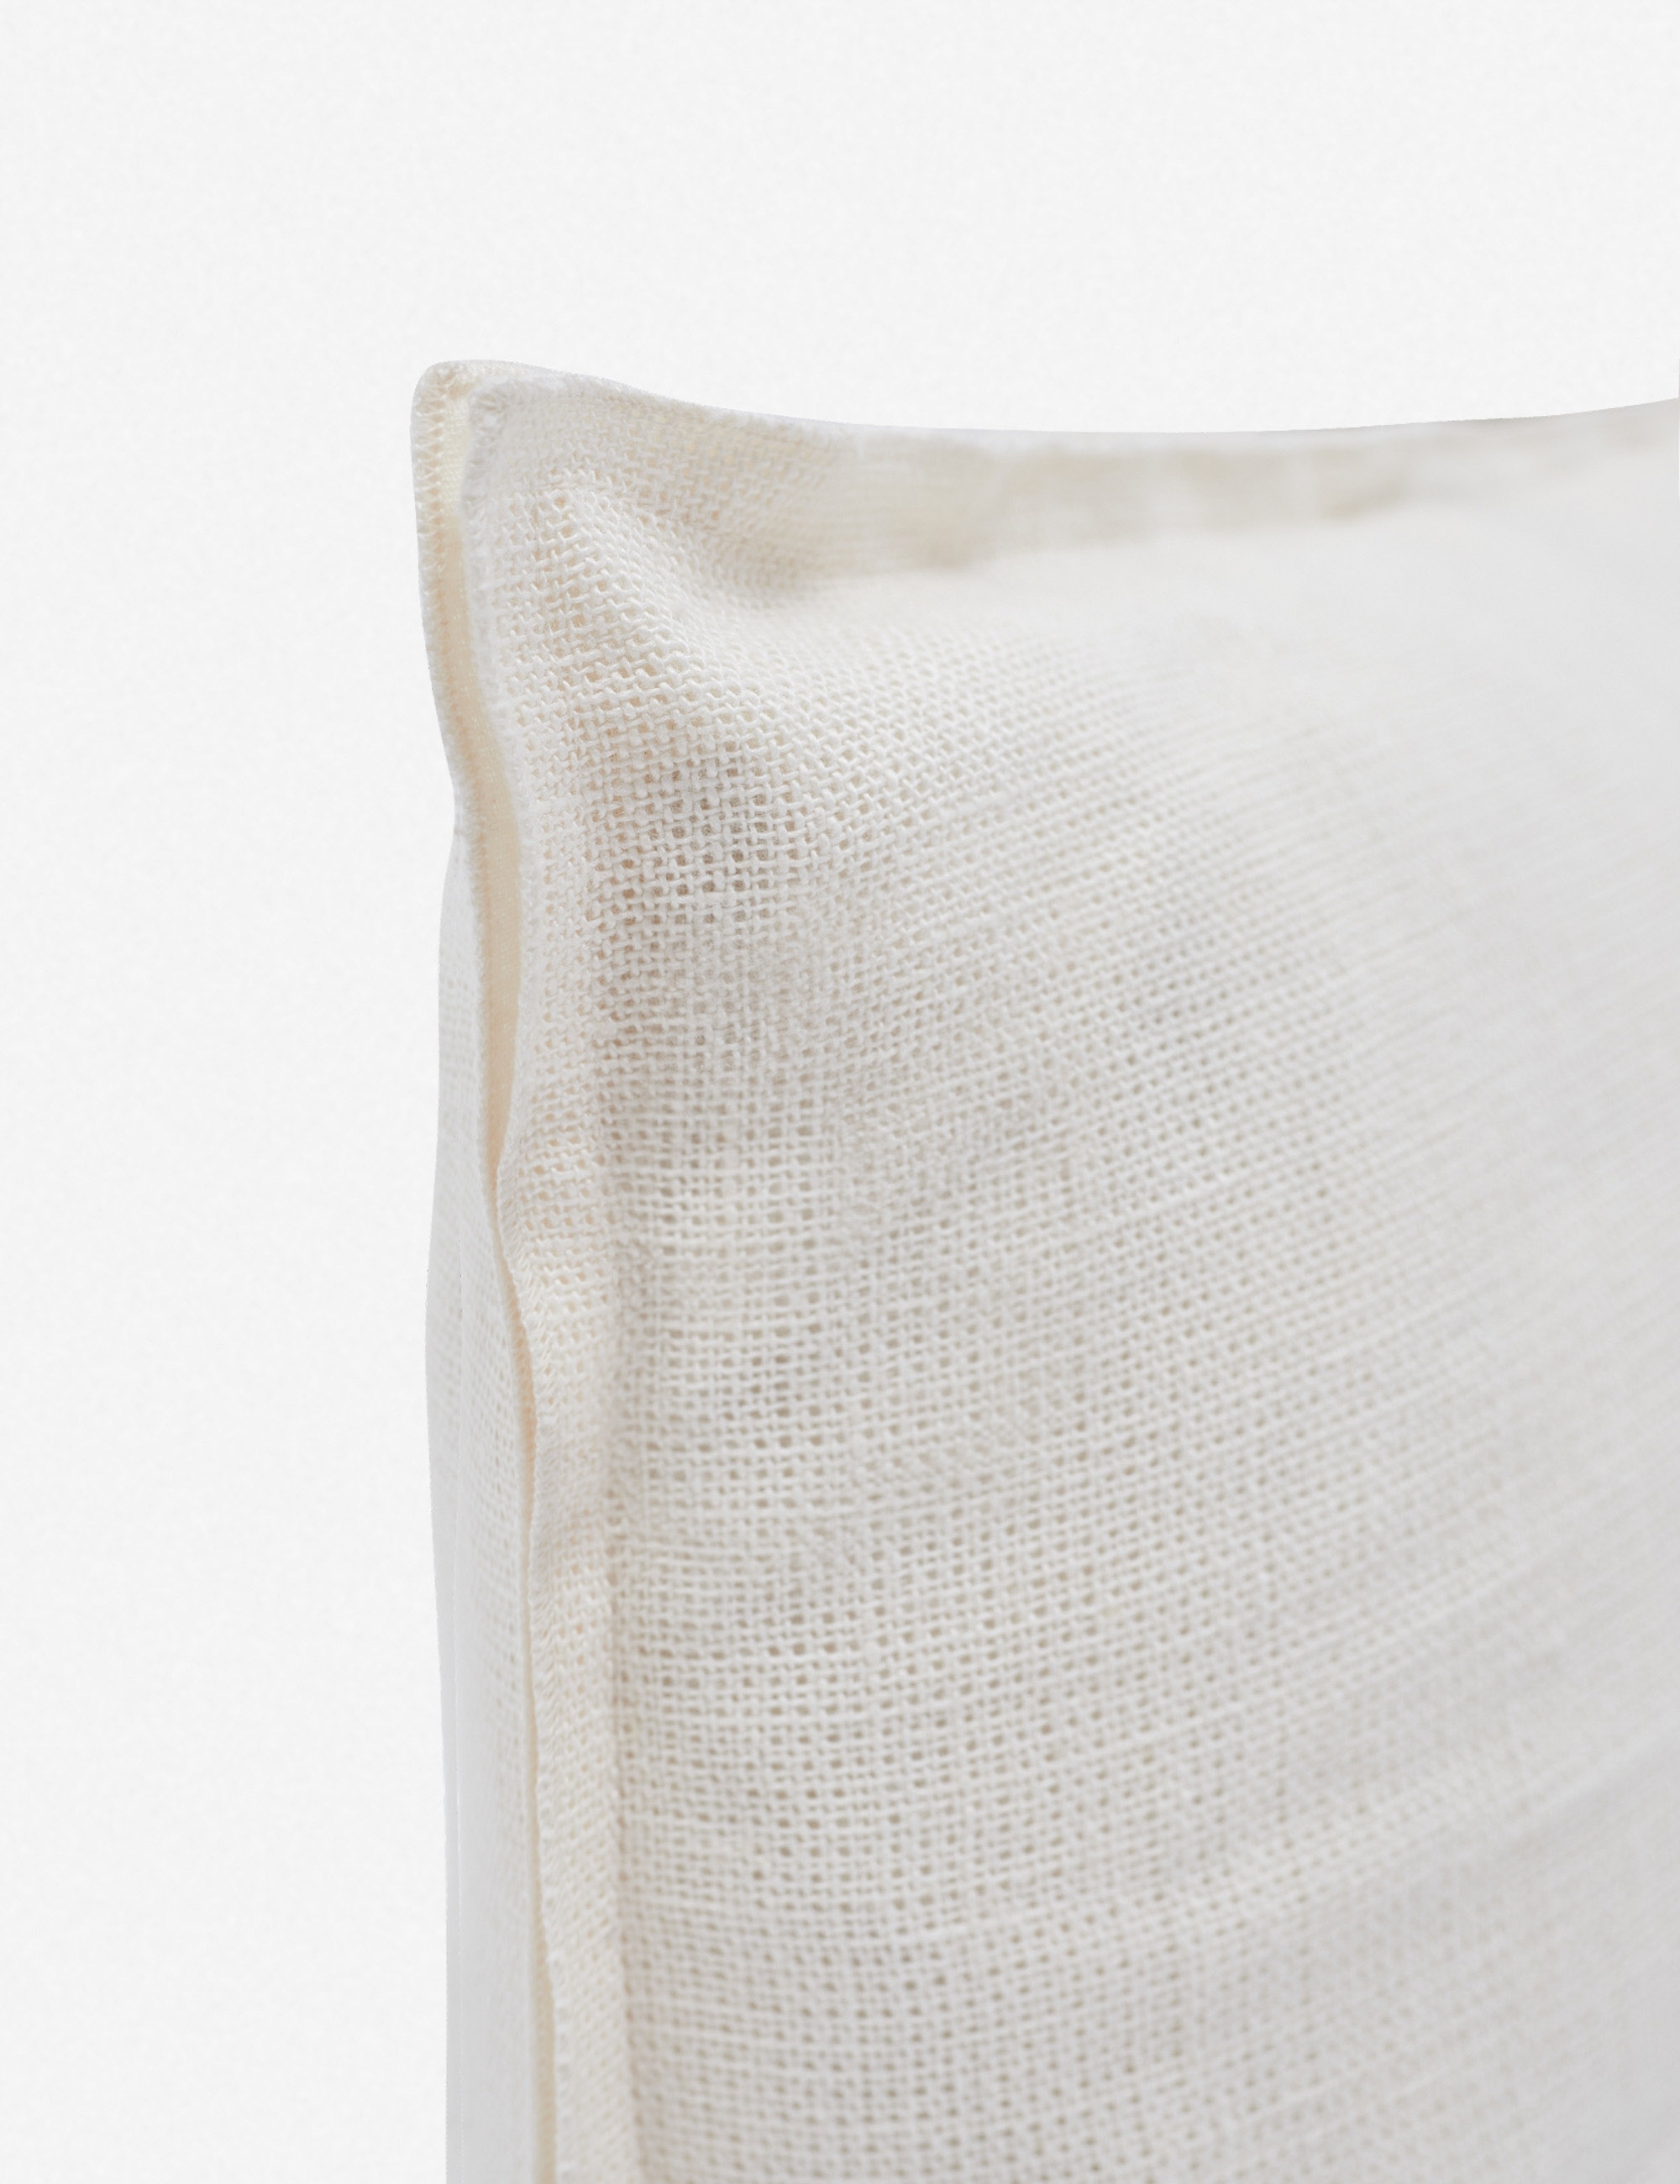 Arlo Linen Long Lumbar Pillow, Ivory - Image 2